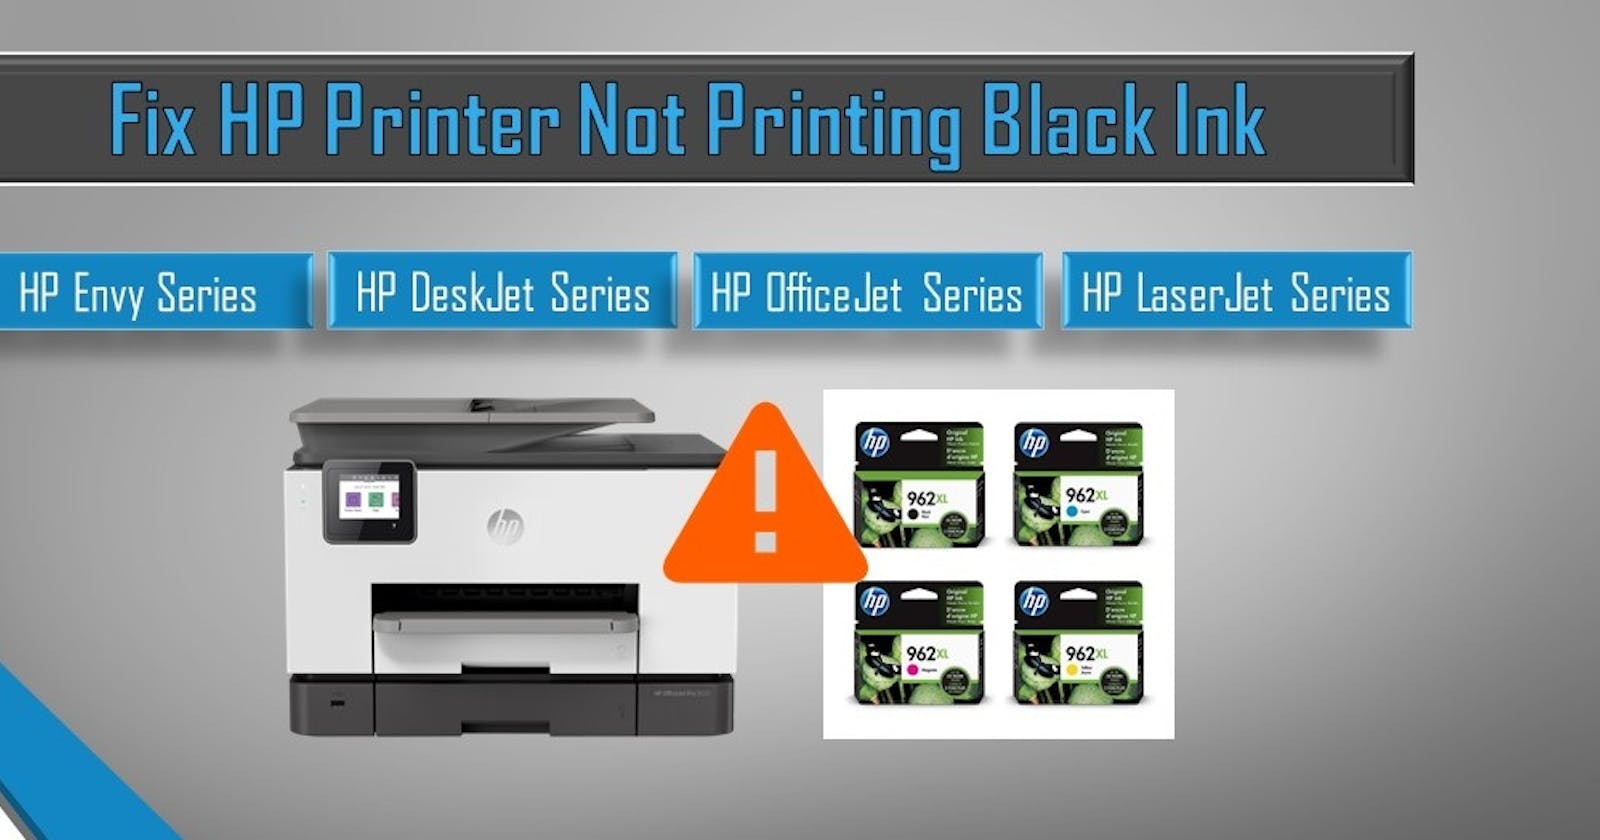 Why My HP Printer Not Printing Black Ink?